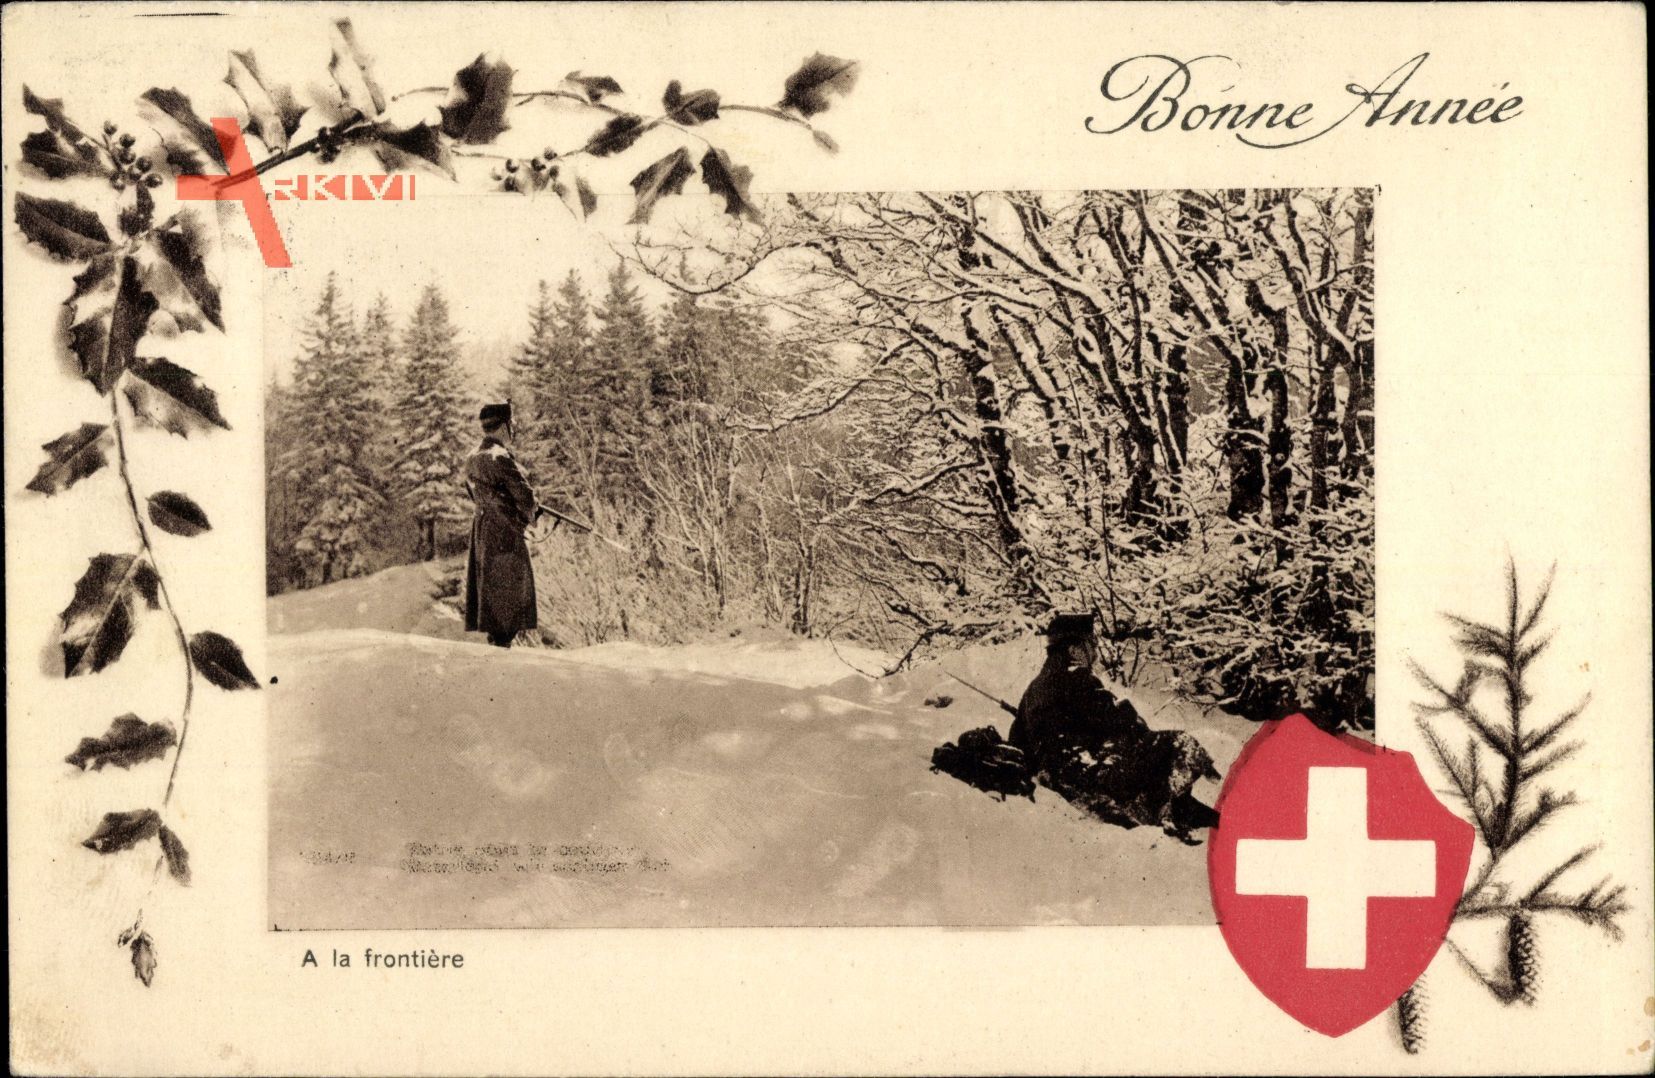 Glückwunsch Neujahr, Schweizer Grenzsoldaten halten Wache, Winter